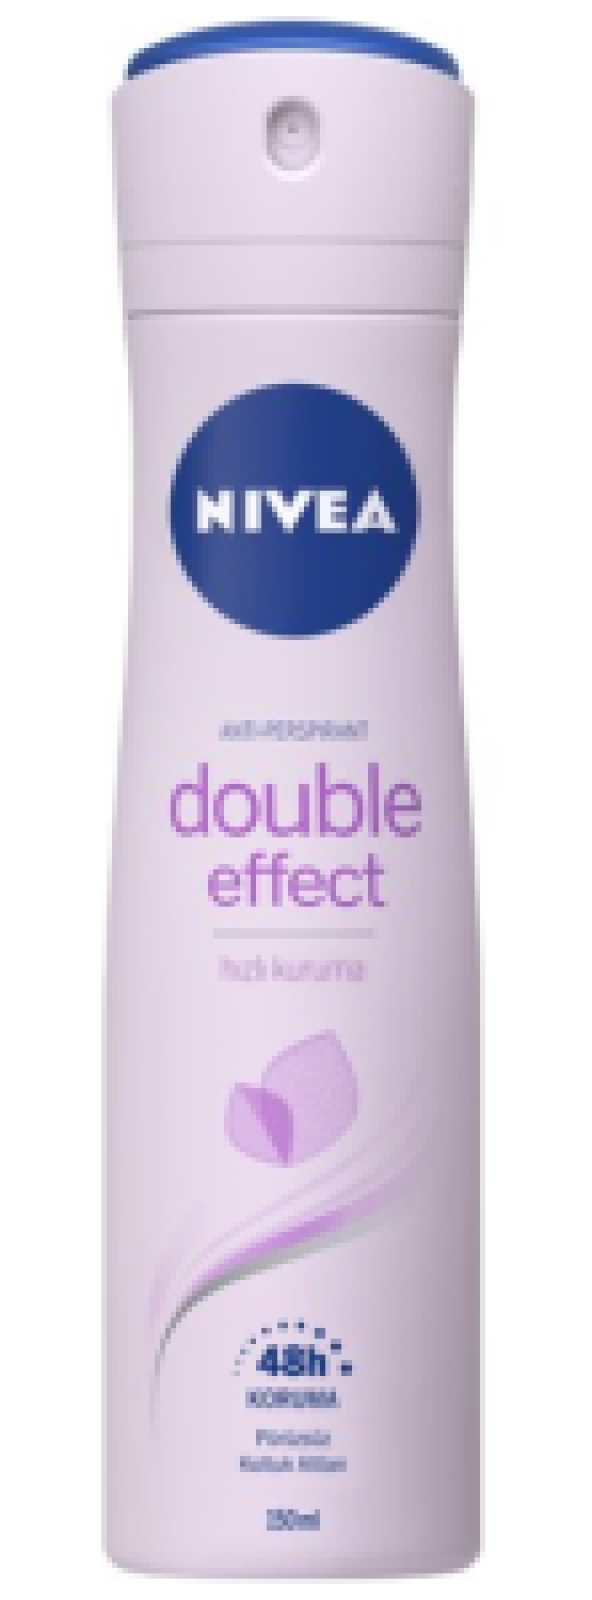 Nivea Double Effect Mor Düşler Sprey Deodorant 150Ml Kadın